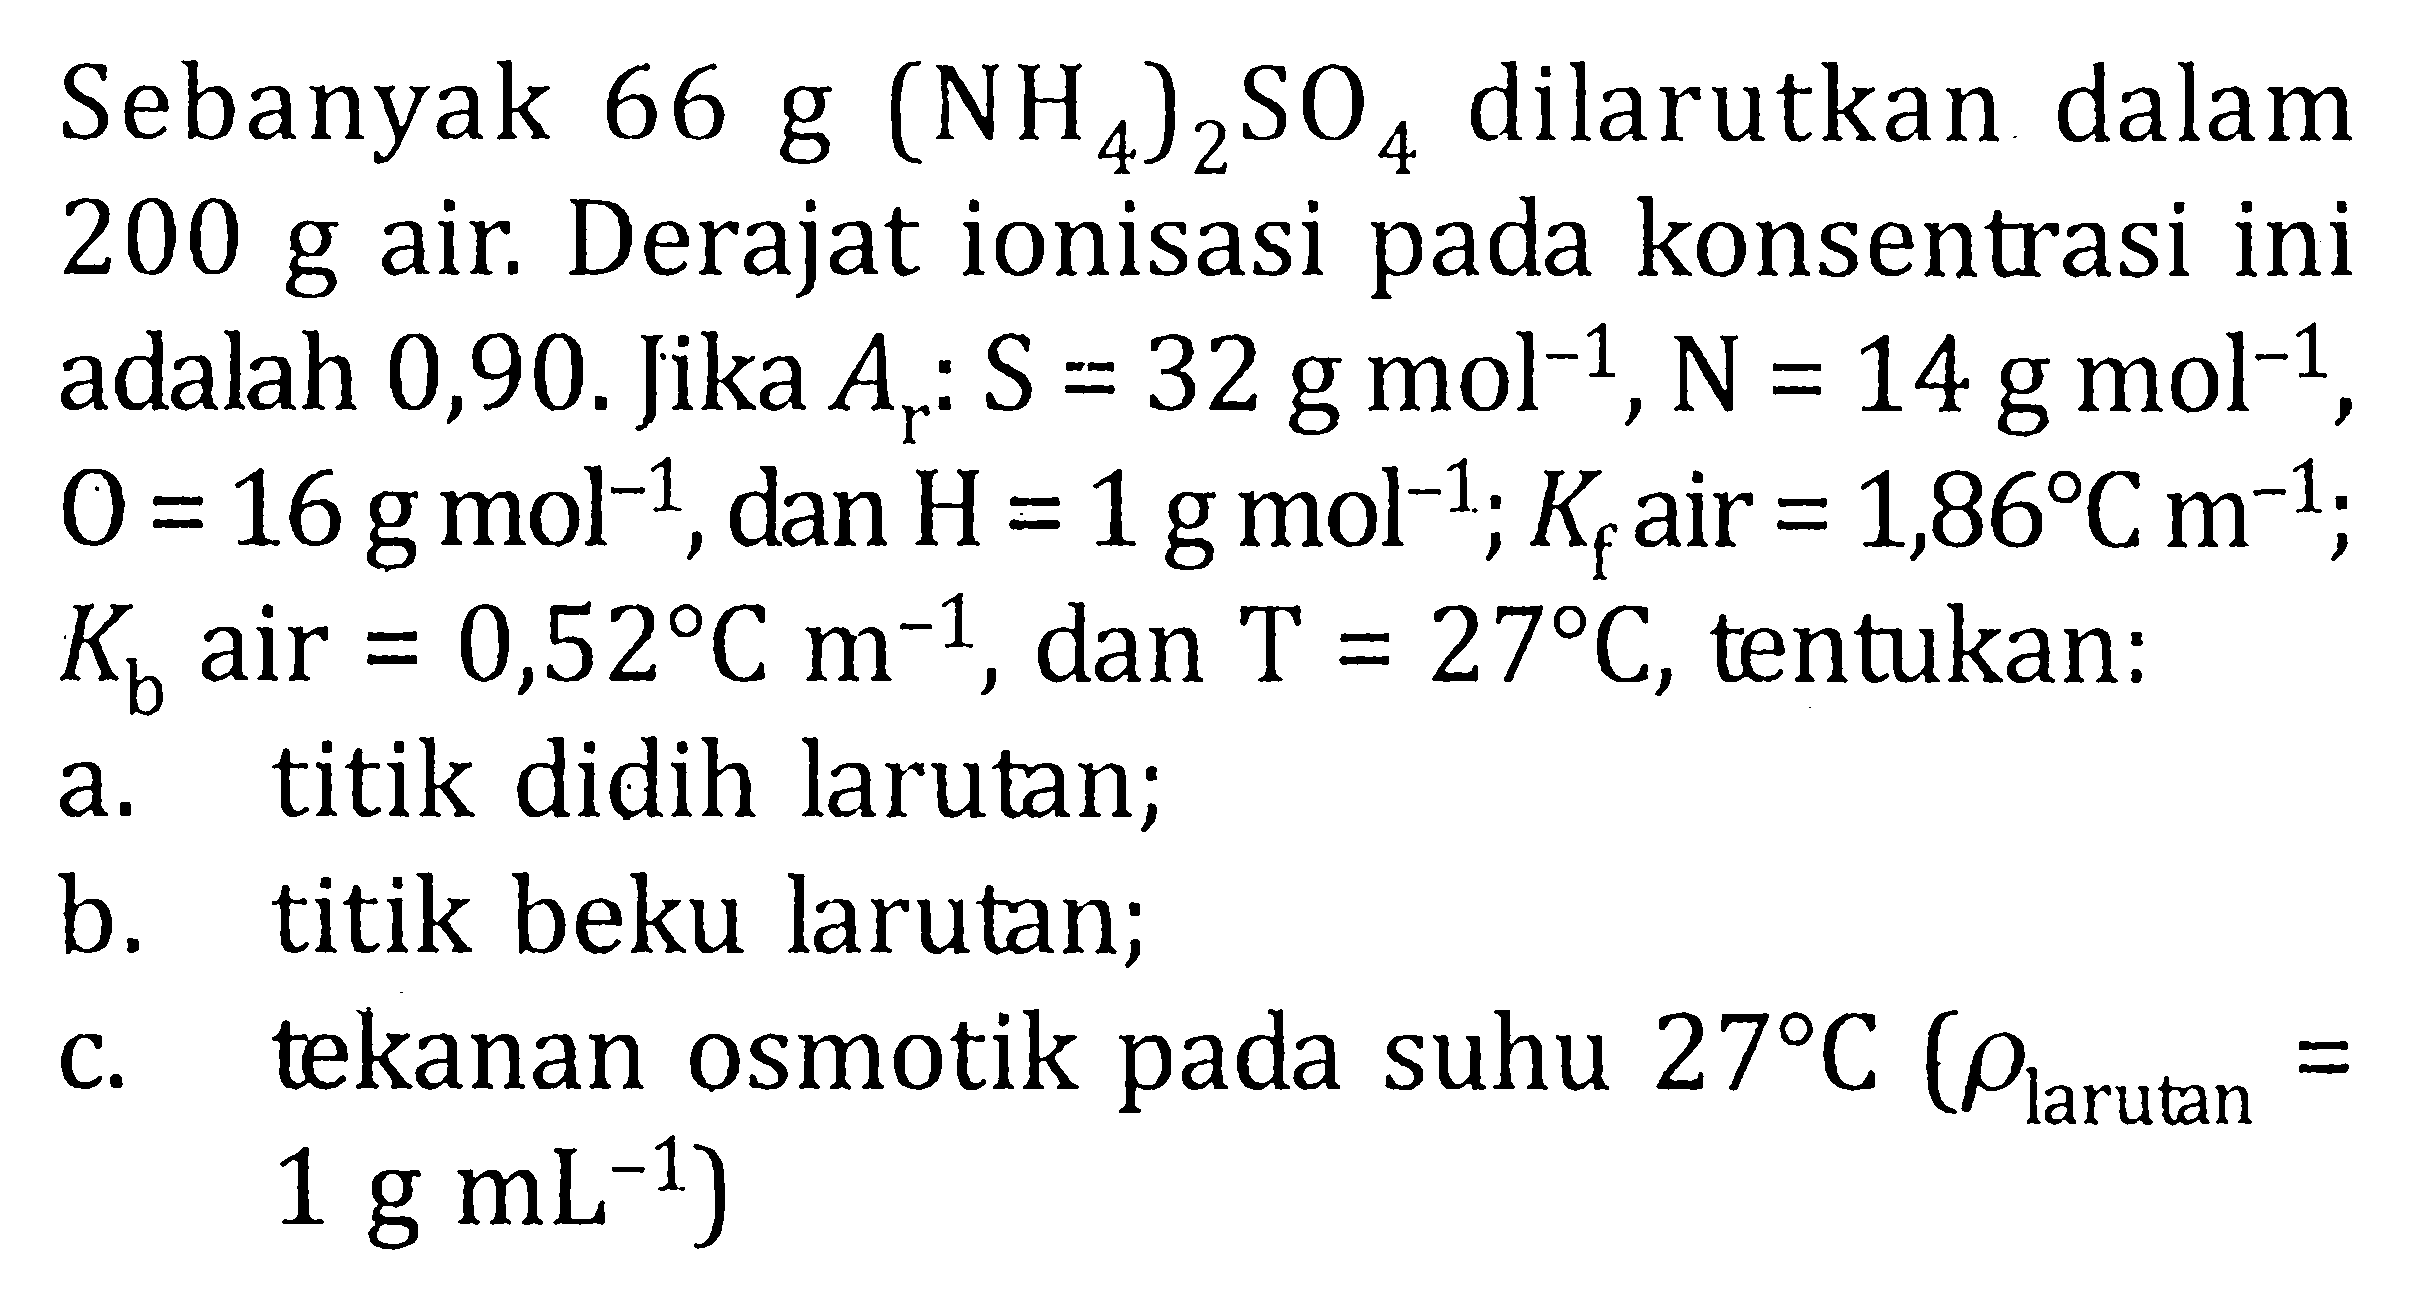 Sebanyak  66 g(NH4)2SO4  dilarutkan dalam  200 g  air. Derajat ionisasi pada konsentrasi ini adalah 0,90. Jika  Ar: S=32 g mol^(-1), N=14 g mol^(-1) ,  O=16 g mol^(-1) , dan  H=1 g mol^(-1) ; Kf  air  =1,86 C m^(-1) ;  Kb  air  =0,52 C m^(-1) , dan  T=27 C , tentukan:a. titik didih larutan;b. titik beku larutan;c. tekanan osmotik pada suhu  27 C(rho larutan = 1 g mL^(-1)  )